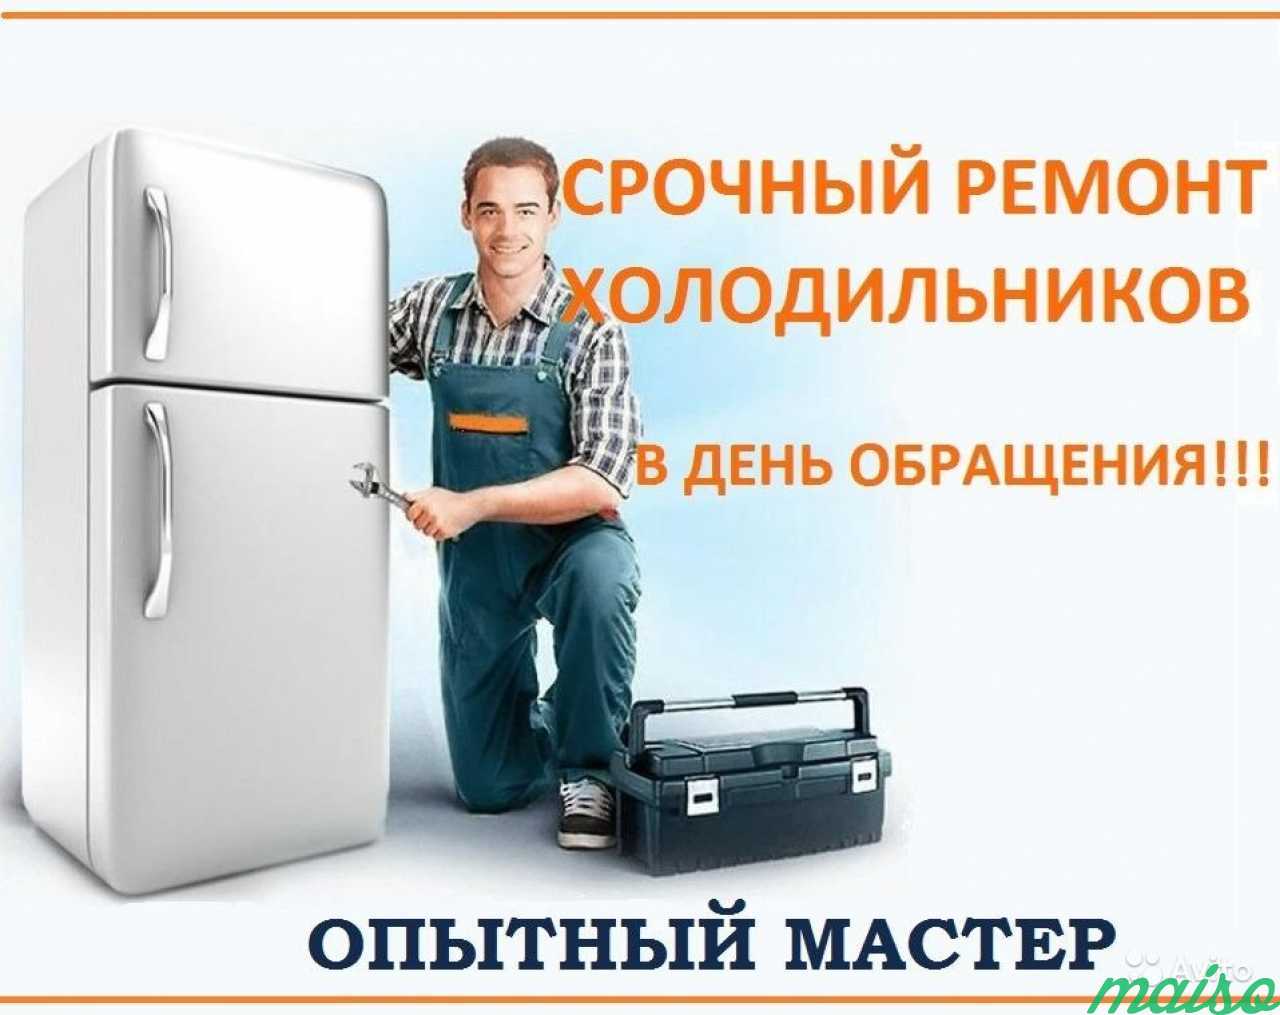 Ремонт холодильников визитка шаблон. Цена ремонта холодильников петербург